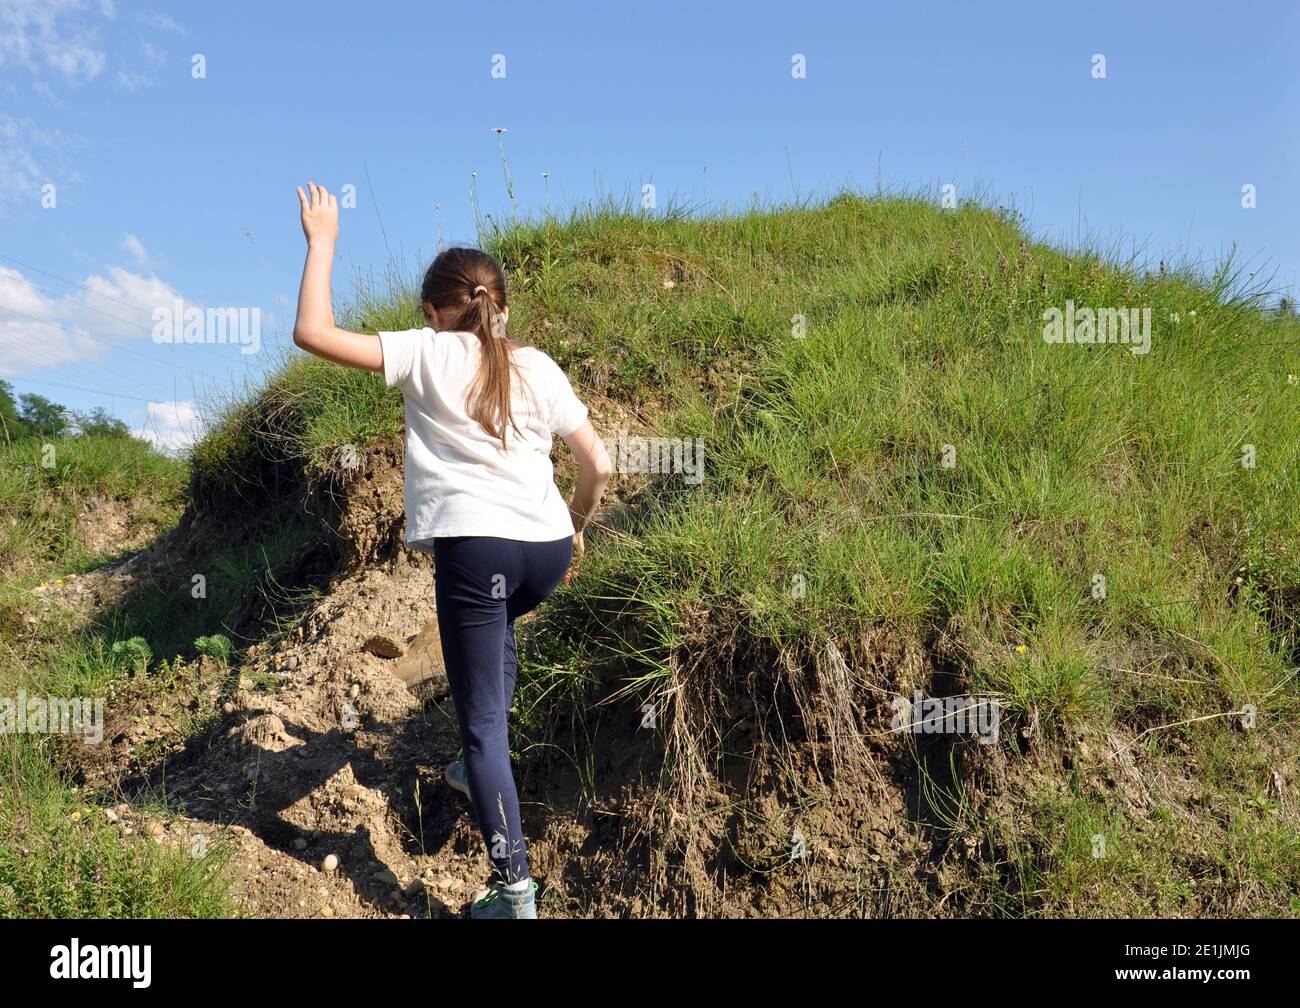 Bambino, ragazza bionda con capelli lunghi, scalando una piccola collina con erba verde, dorso Foto Stock